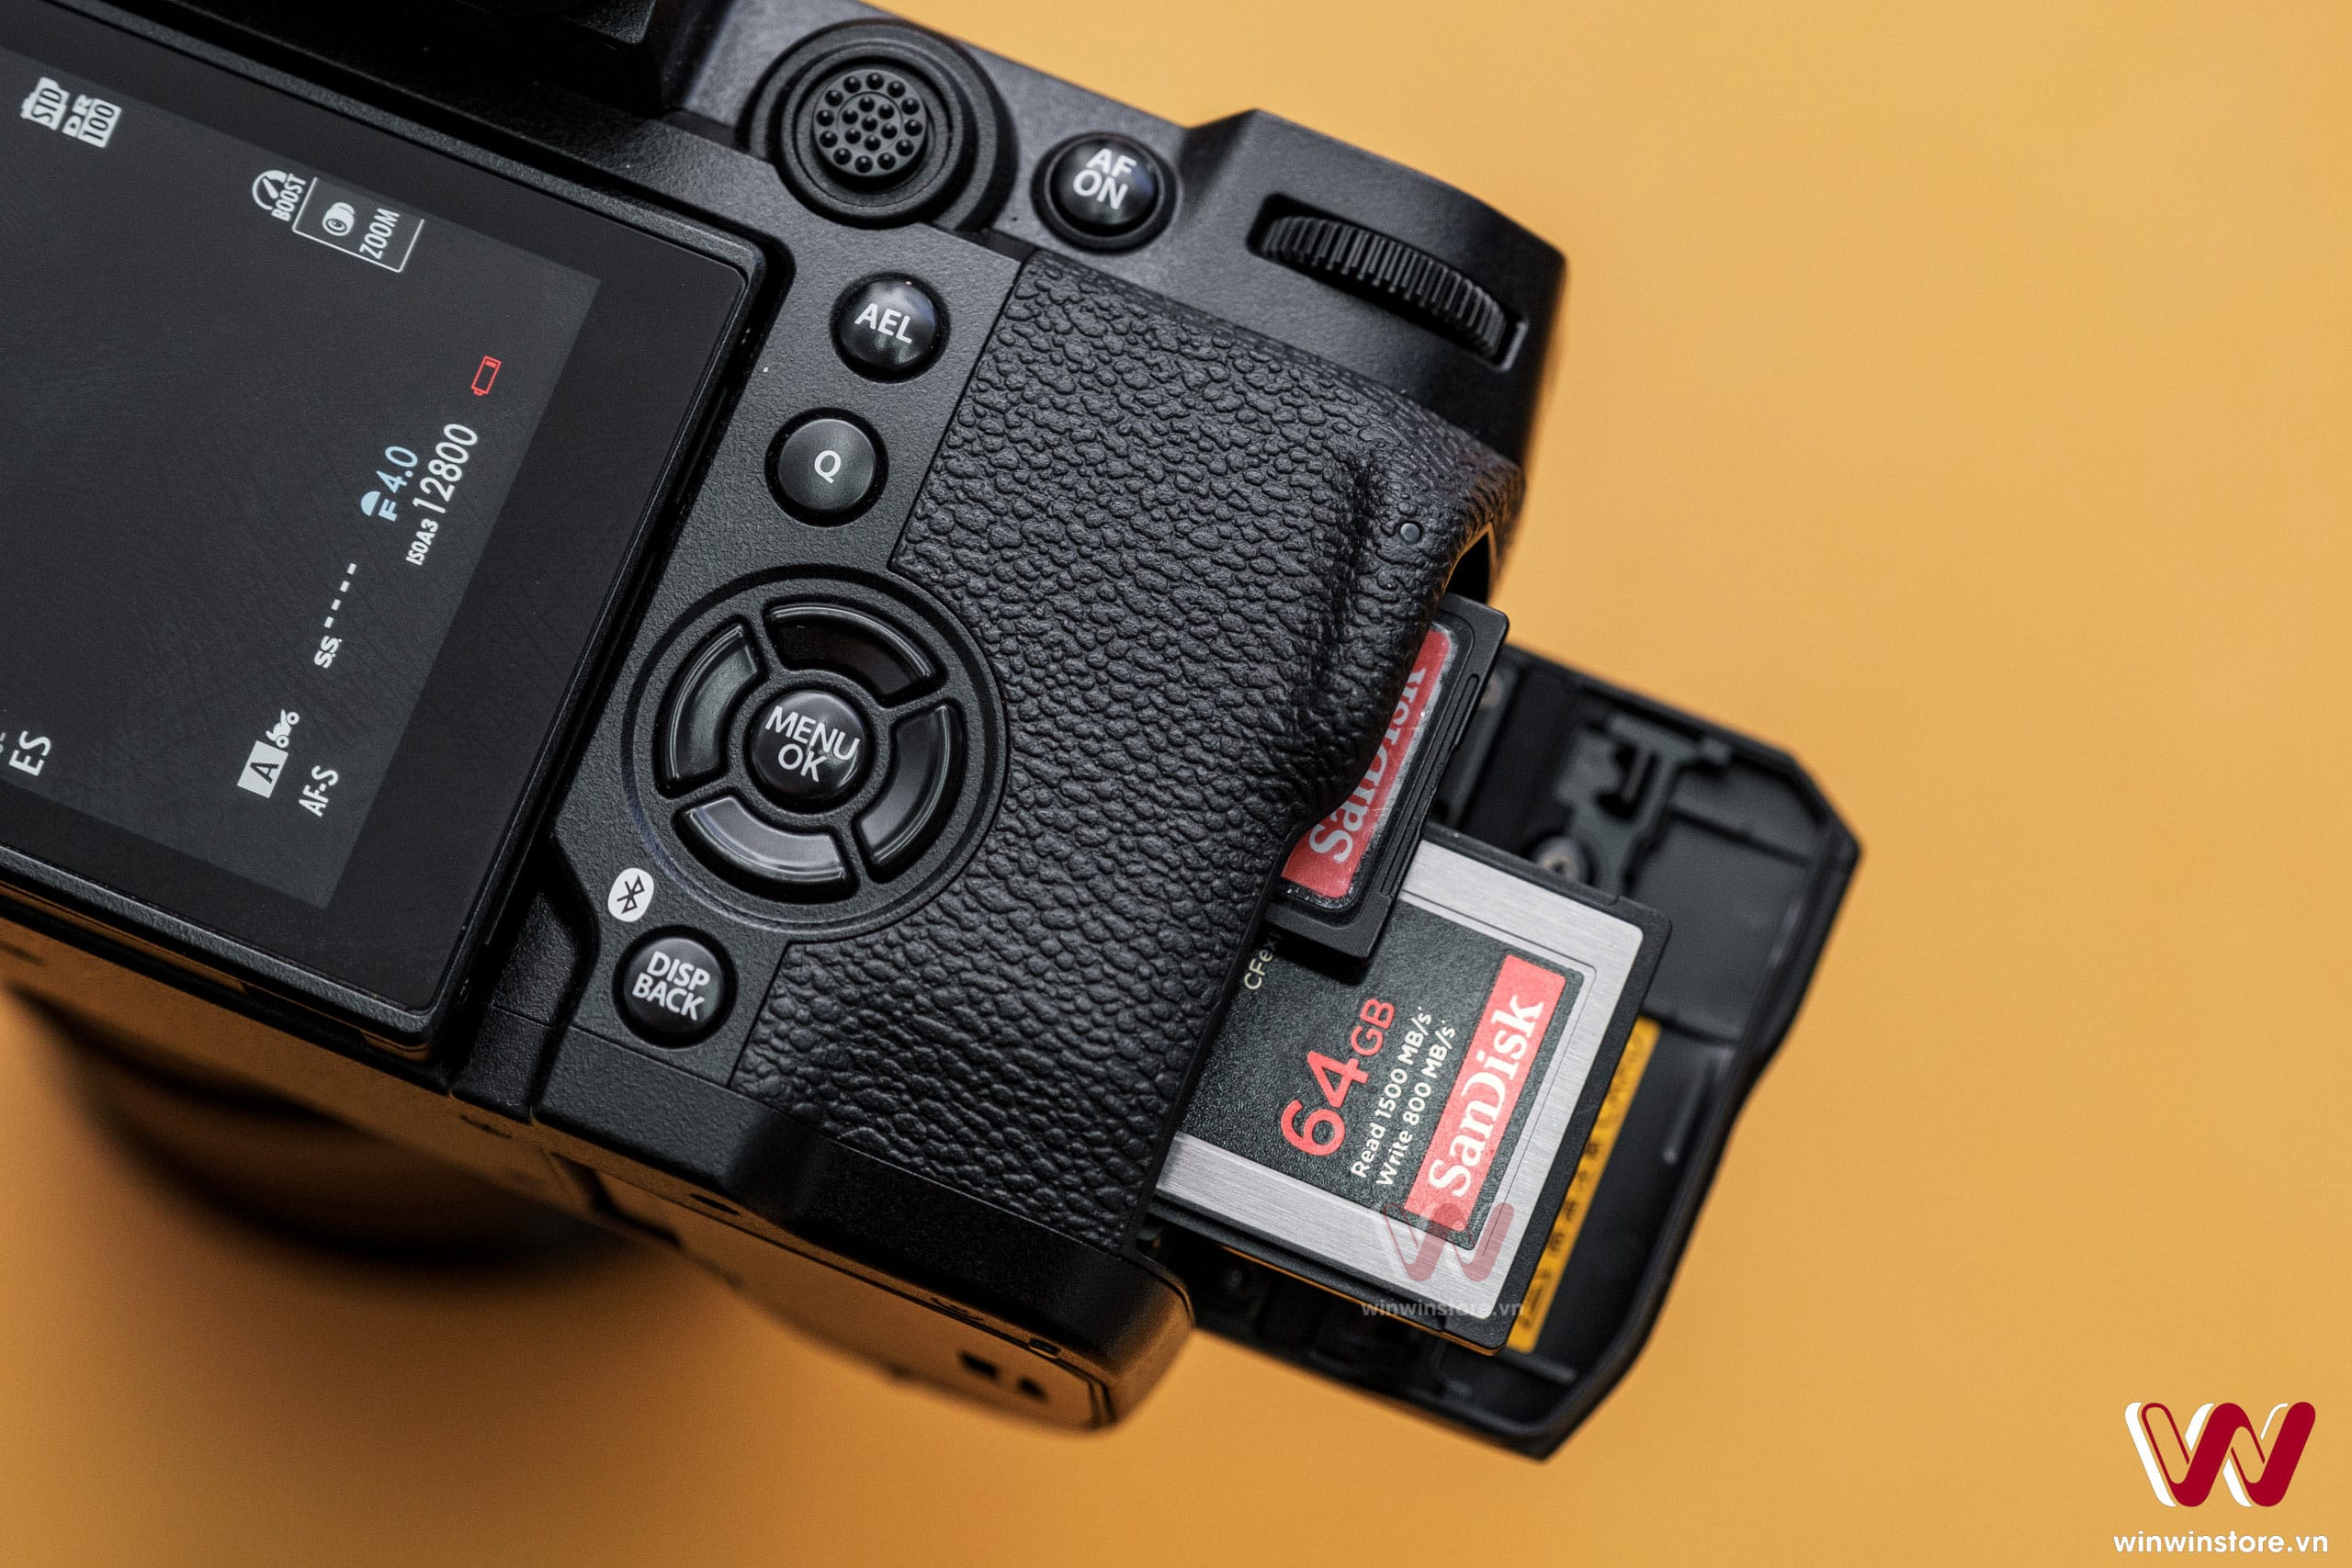 Hướng dẫn cập nhật firmware cho máy ảnh Fujifilm an toàn nhất